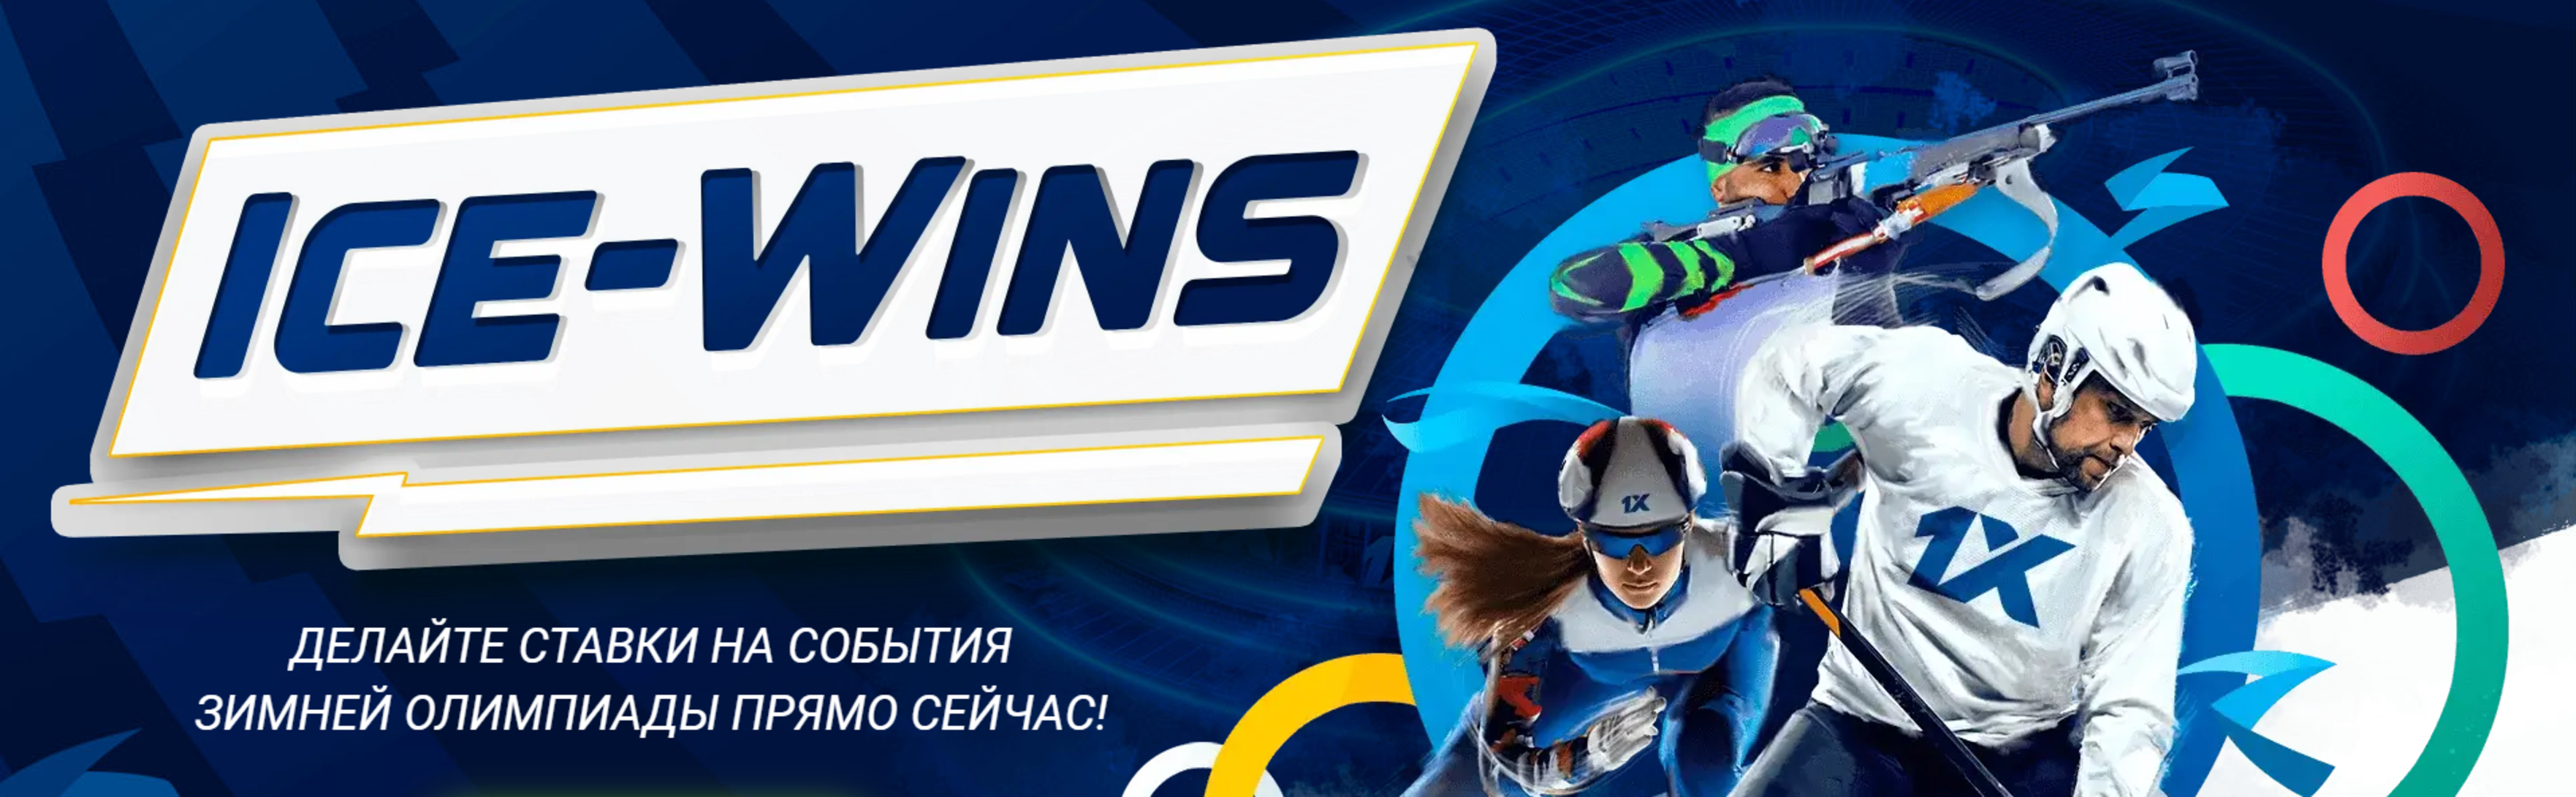 1xBet в Казахстане начинает акцию Ice-Wins в честь зимних Олимпийских Игр 2022